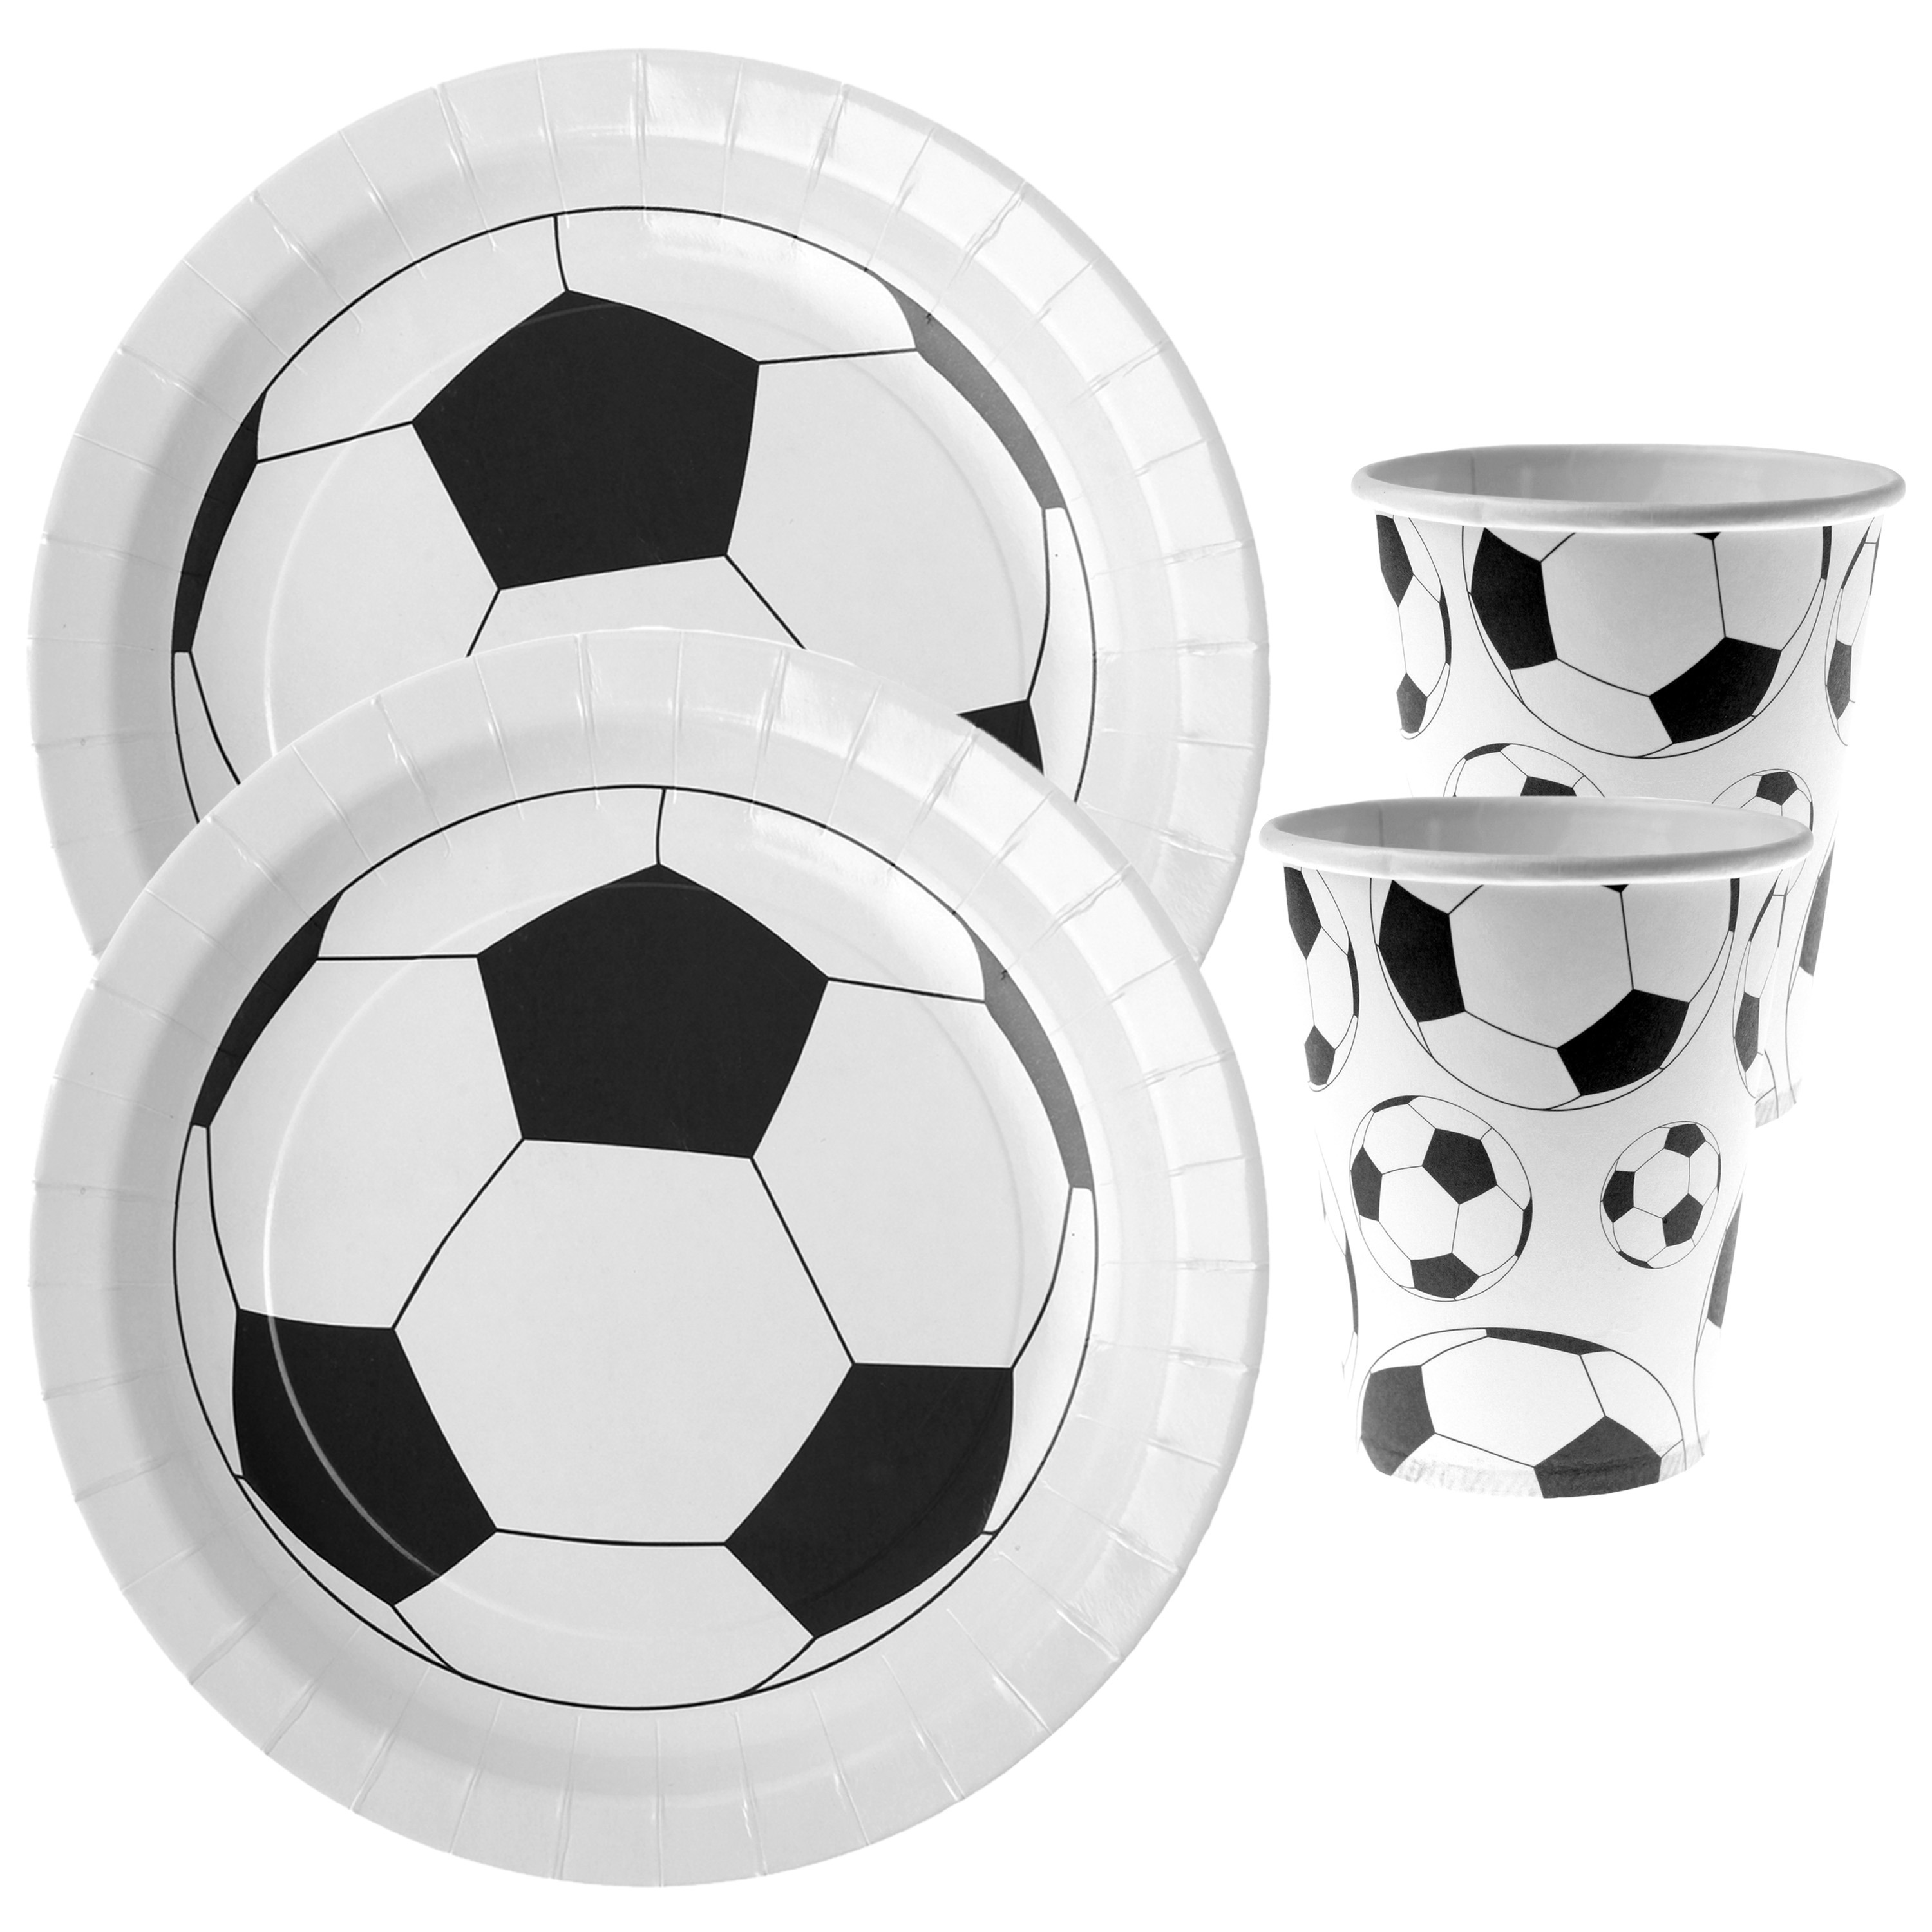 Voetbal thema feest wegwerp servies set 10x bordjes-10x bekers wit-zwart